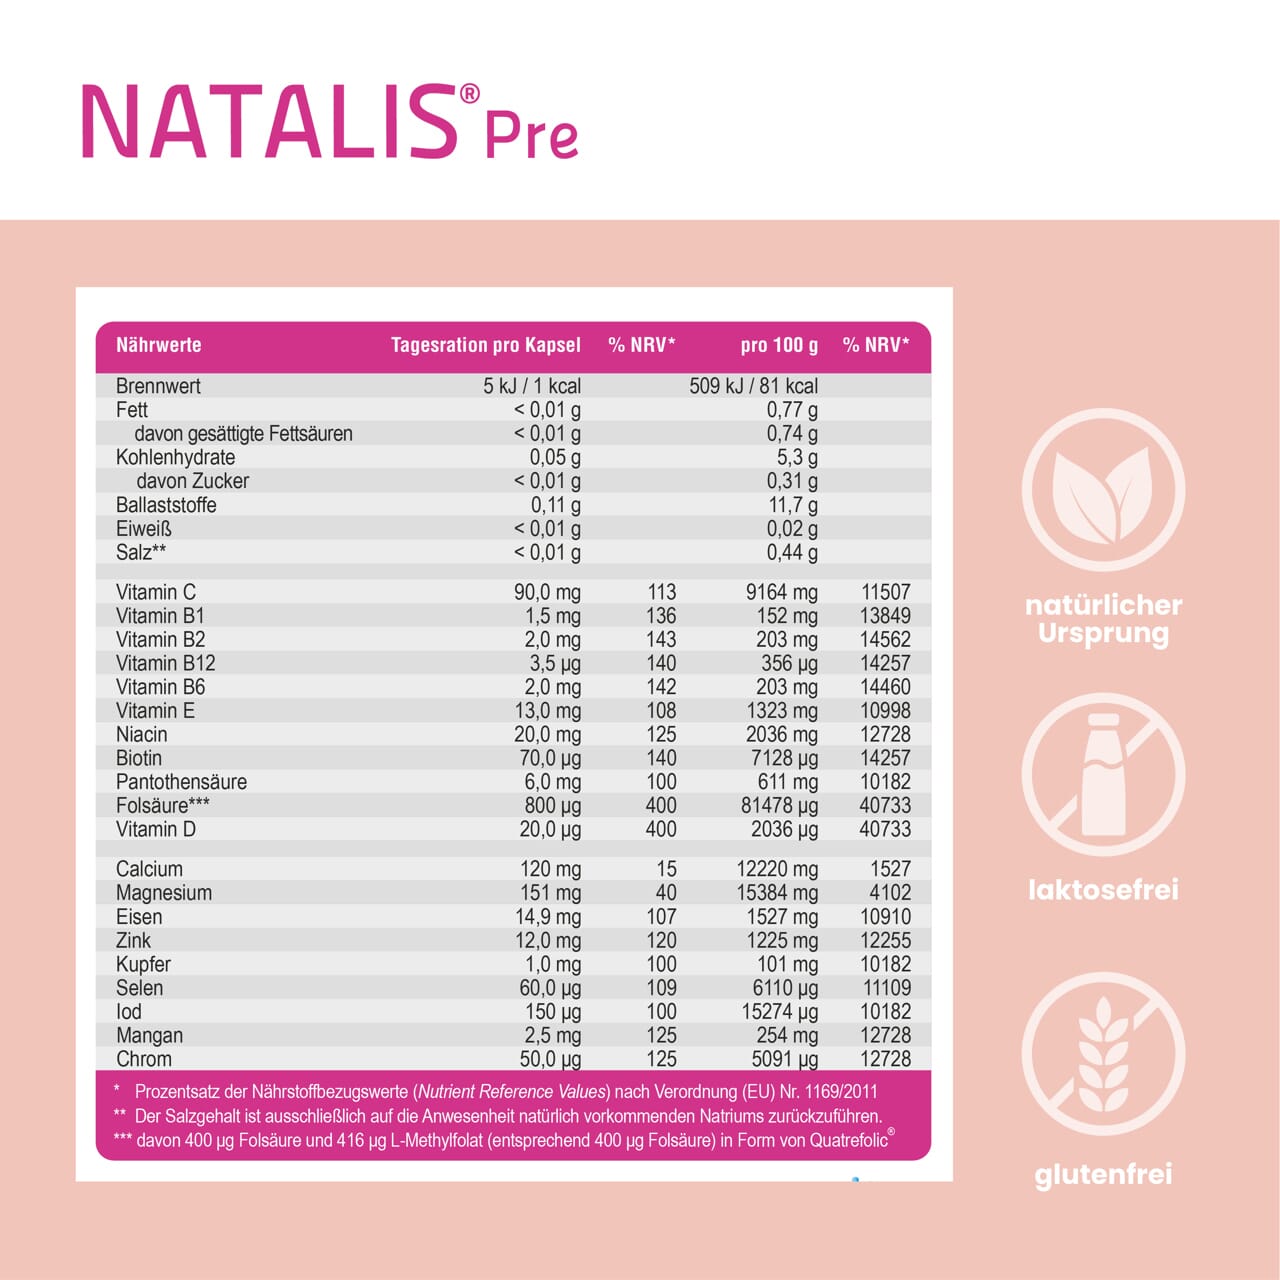 Nährwertangaben der NATALIS® Pre Kapseln, Informationen über Kalorien und Vitamine, Hinweise auf natürlichen Ursprung, lactose- und glutenfrei.